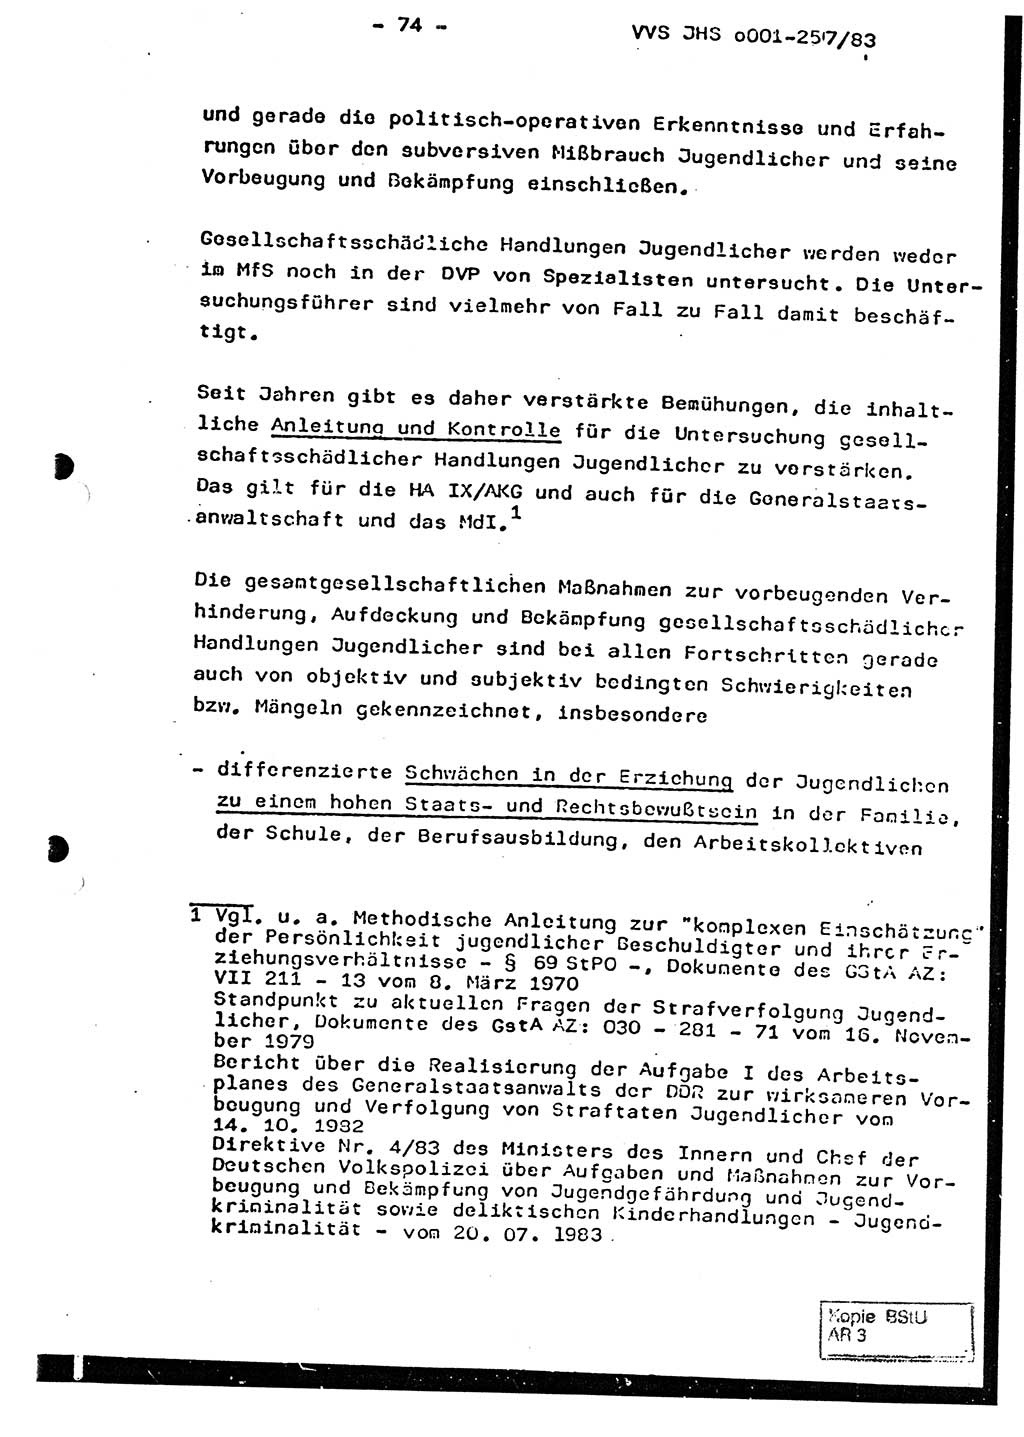 Dissertation, Oberst Helmut Lubas (BV Mdg.), Oberstleutnant Manfred Eschberger (HA IX), Oberleutnant Hans-Jürgen Ludwig (JHS), Ministerium für Staatssicherheit (MfS) [Deutsche Demokratische Republik (DDR)], Juristische Hochschule (JHS), Vertrauliche Verschlußsache (VVS) o001-257/83, Potsdam 1983, Seite 74 (Diss. MfS DDR JHS VVS o001-257/83 1983, S. 74)